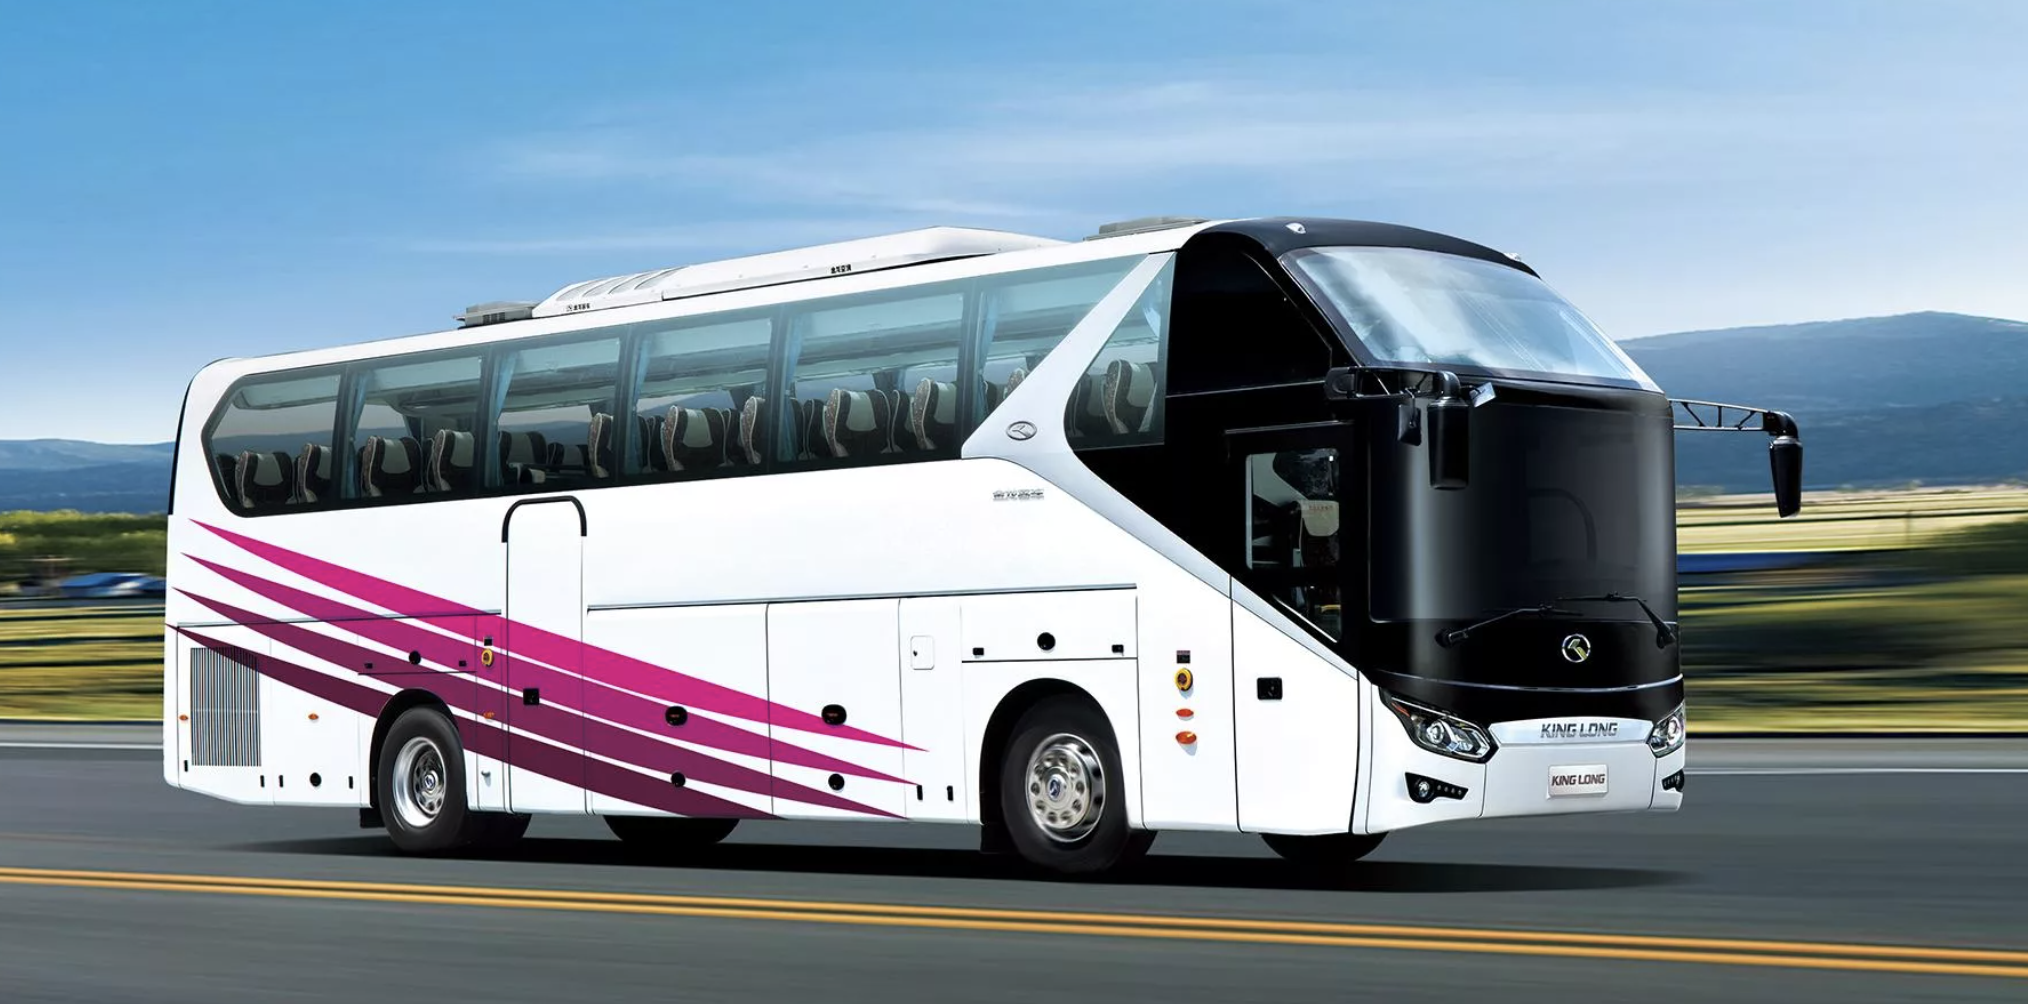 Перевозки межгород автобус. Автобусы Кинг Лонг пассажирские. Туристический автобус Кинг Лонг. Кинг Лонг автобус 2021 года. Туристические автобусы Кинг Лонг 45 мест.